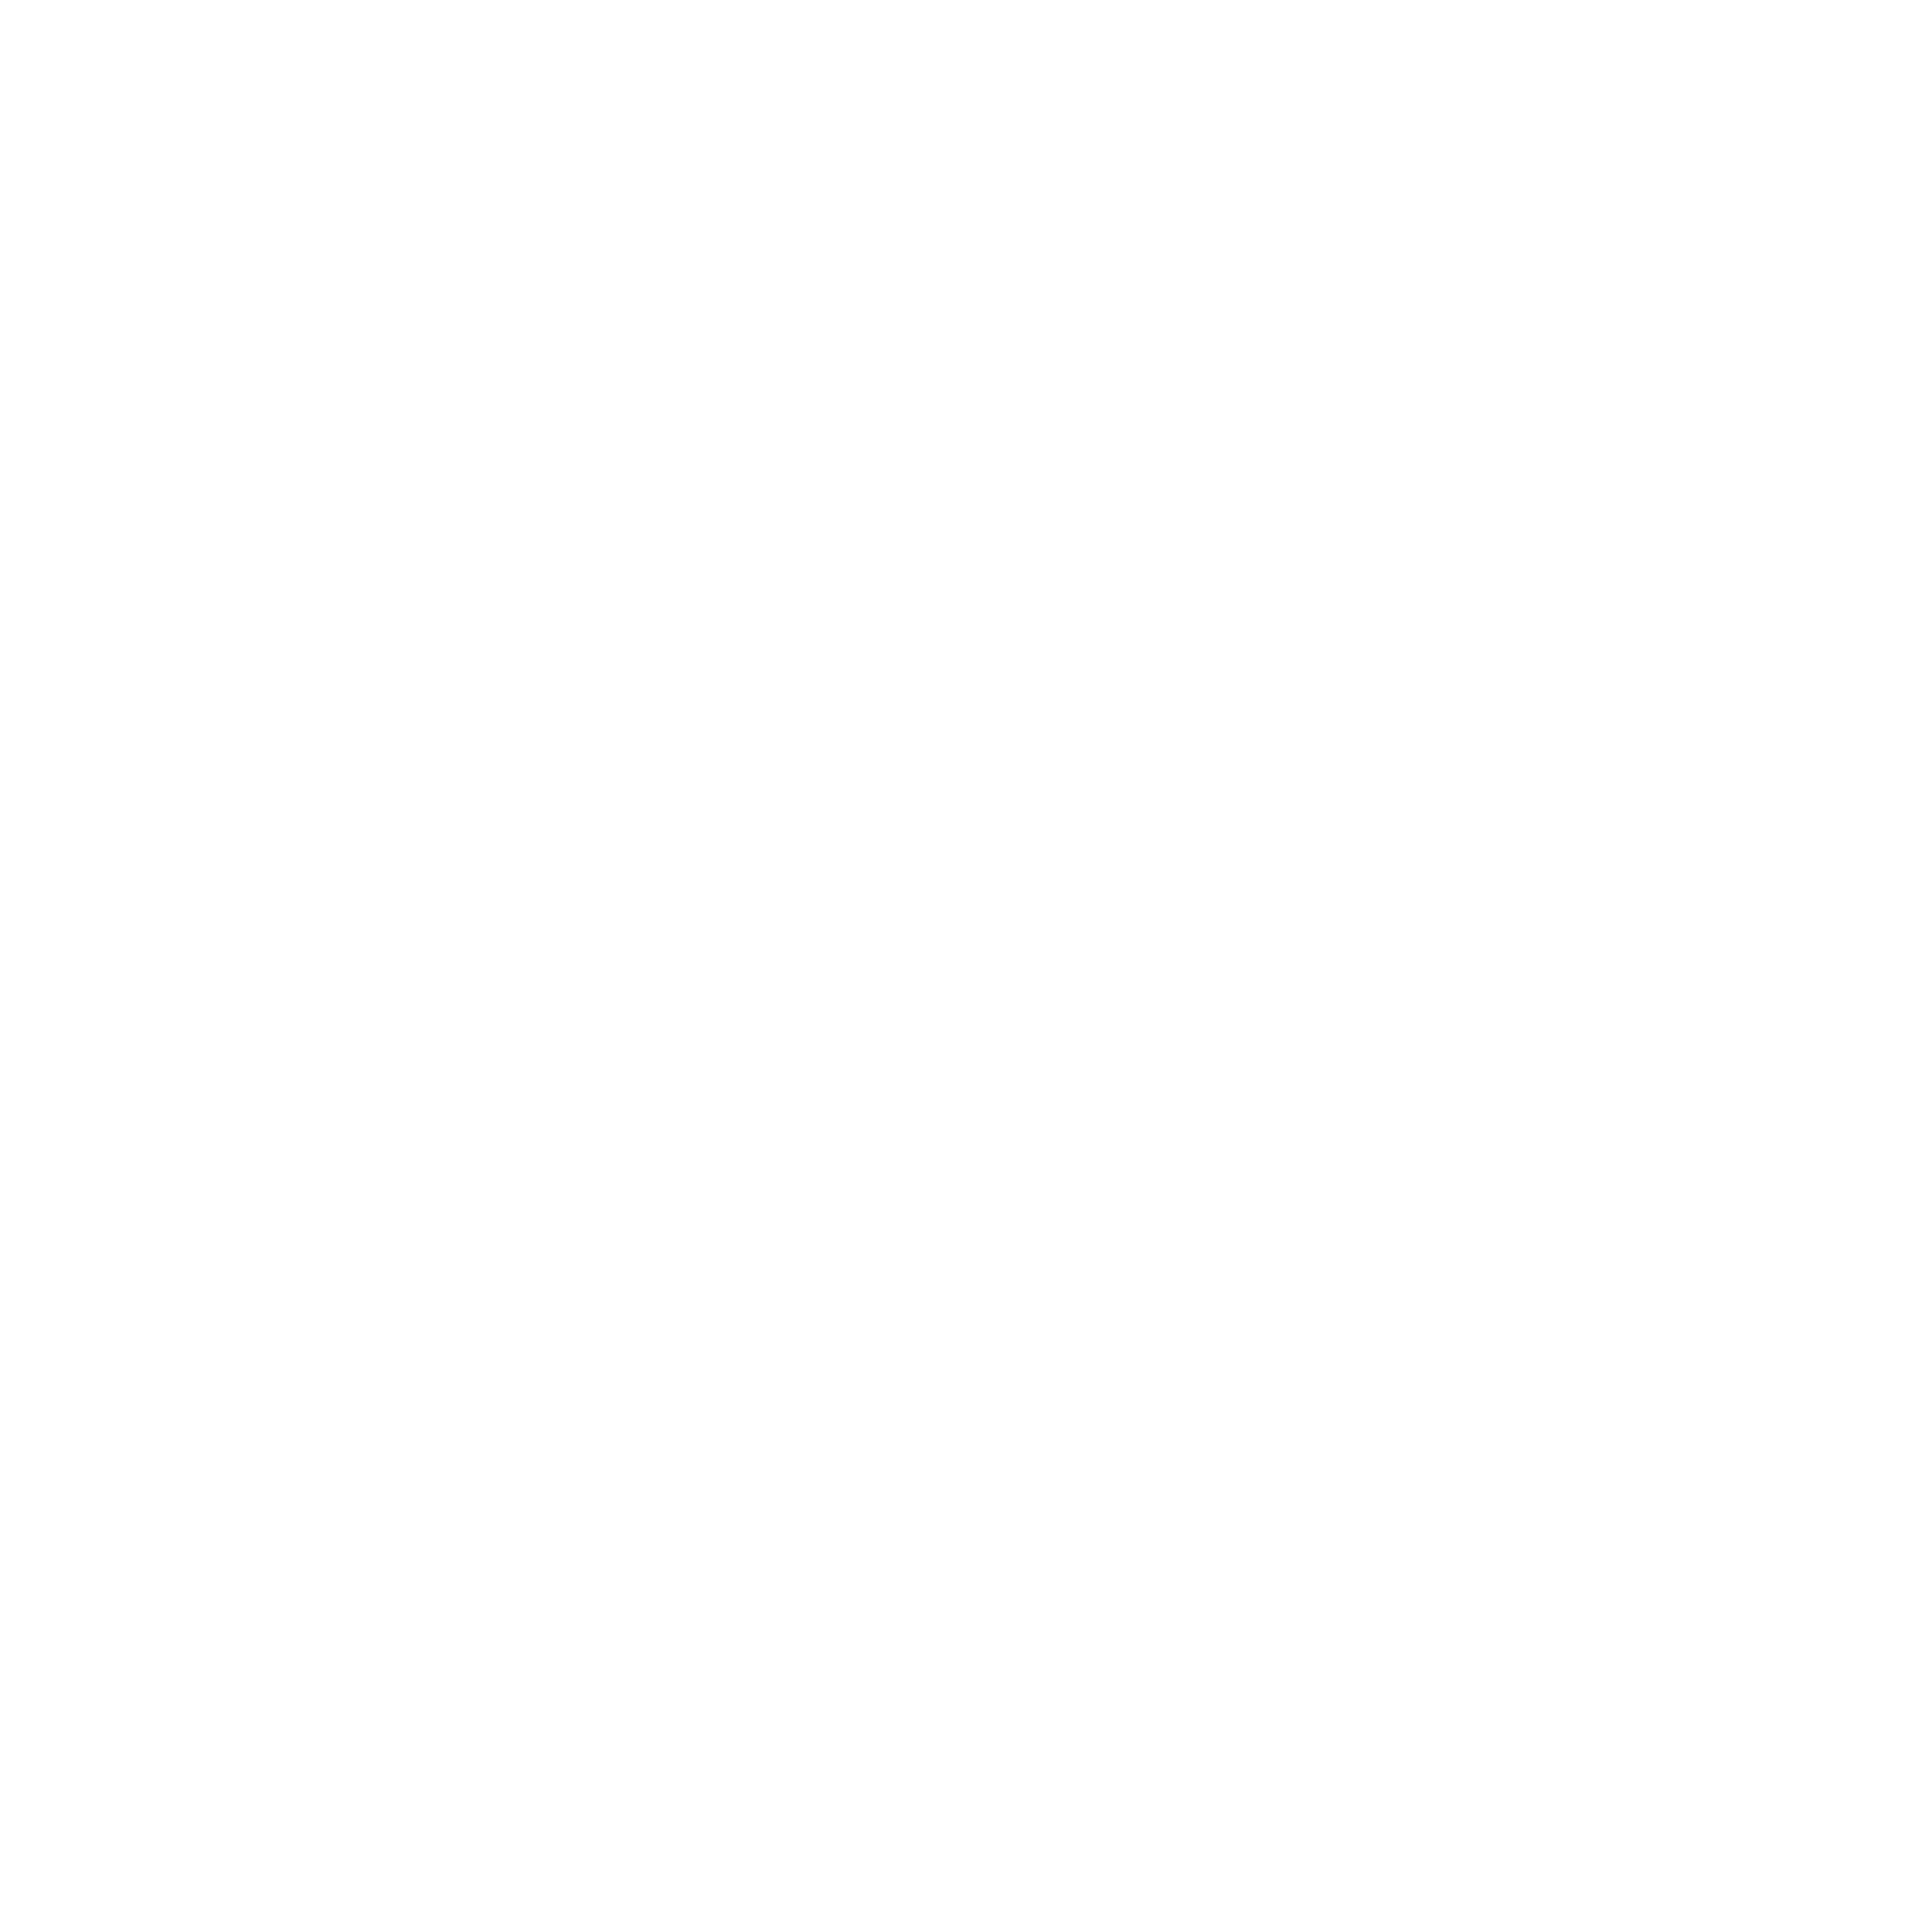 PS Studio